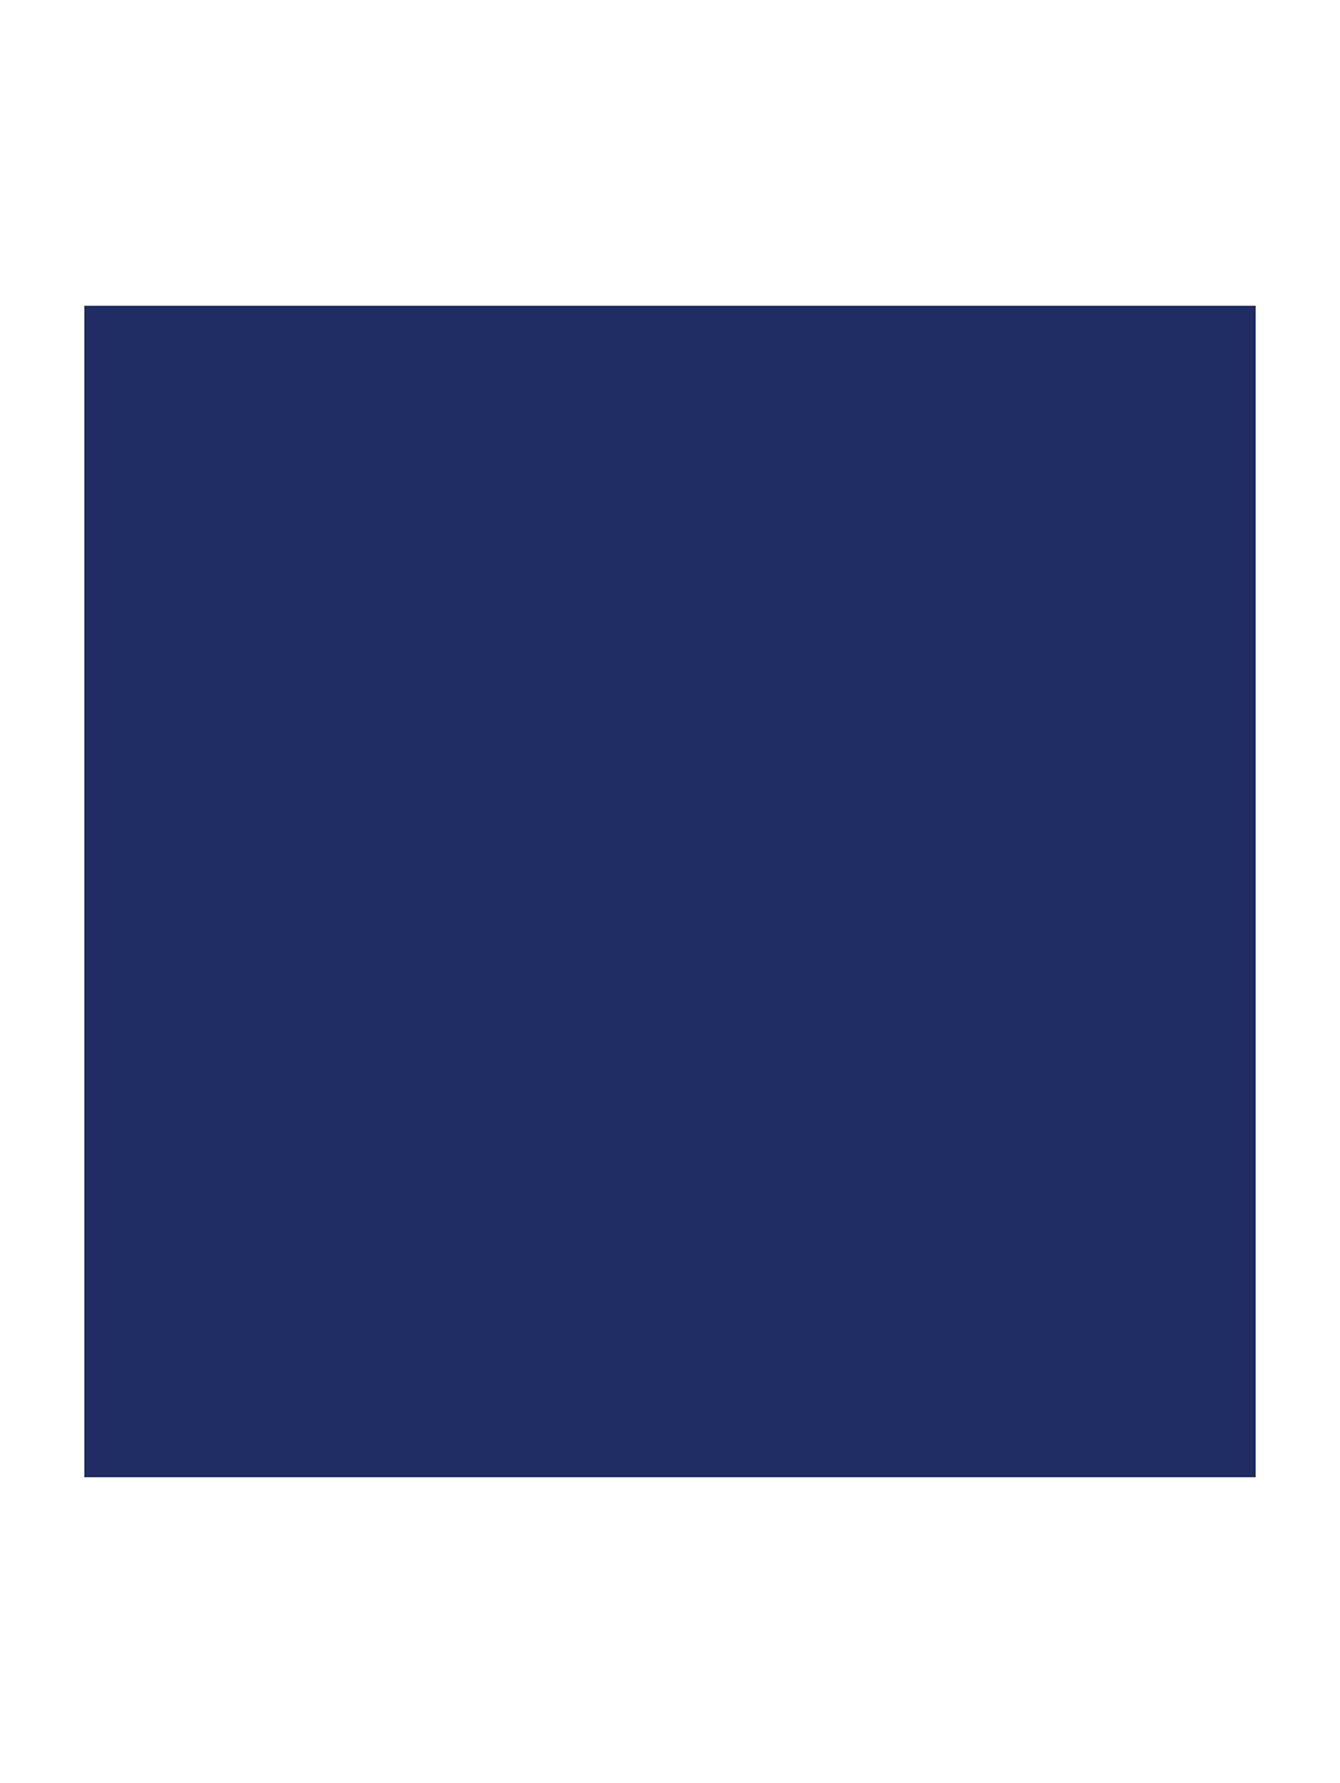 Подкручивающая тушь для ресниц с эффектом объема Diorshow Iconic Overcurl, 264 Синий, 6 г - Обтравка1